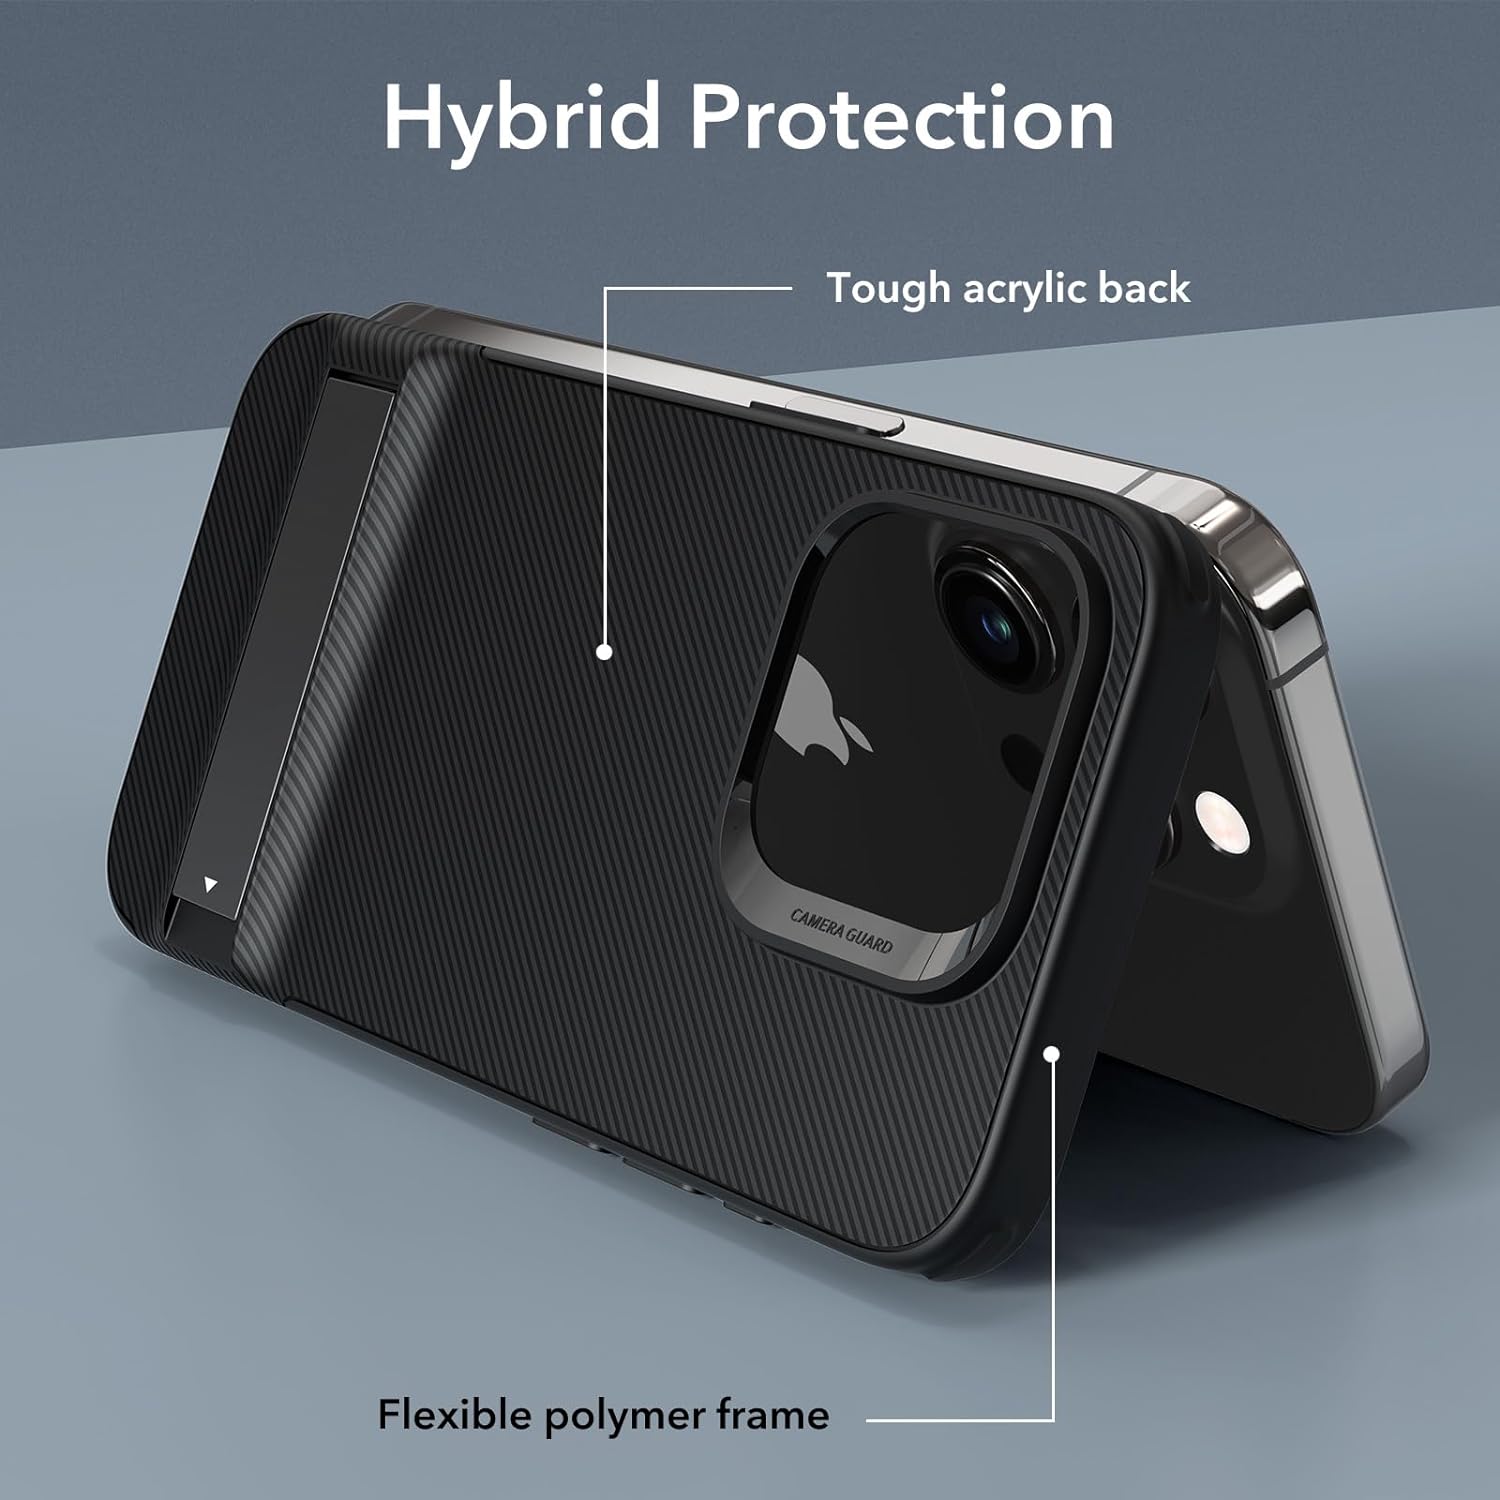 Ốp Lưng cho iPhone 15 Pro Max ESR Boost Kickstand Phone Case - Hàng Chính Hãng